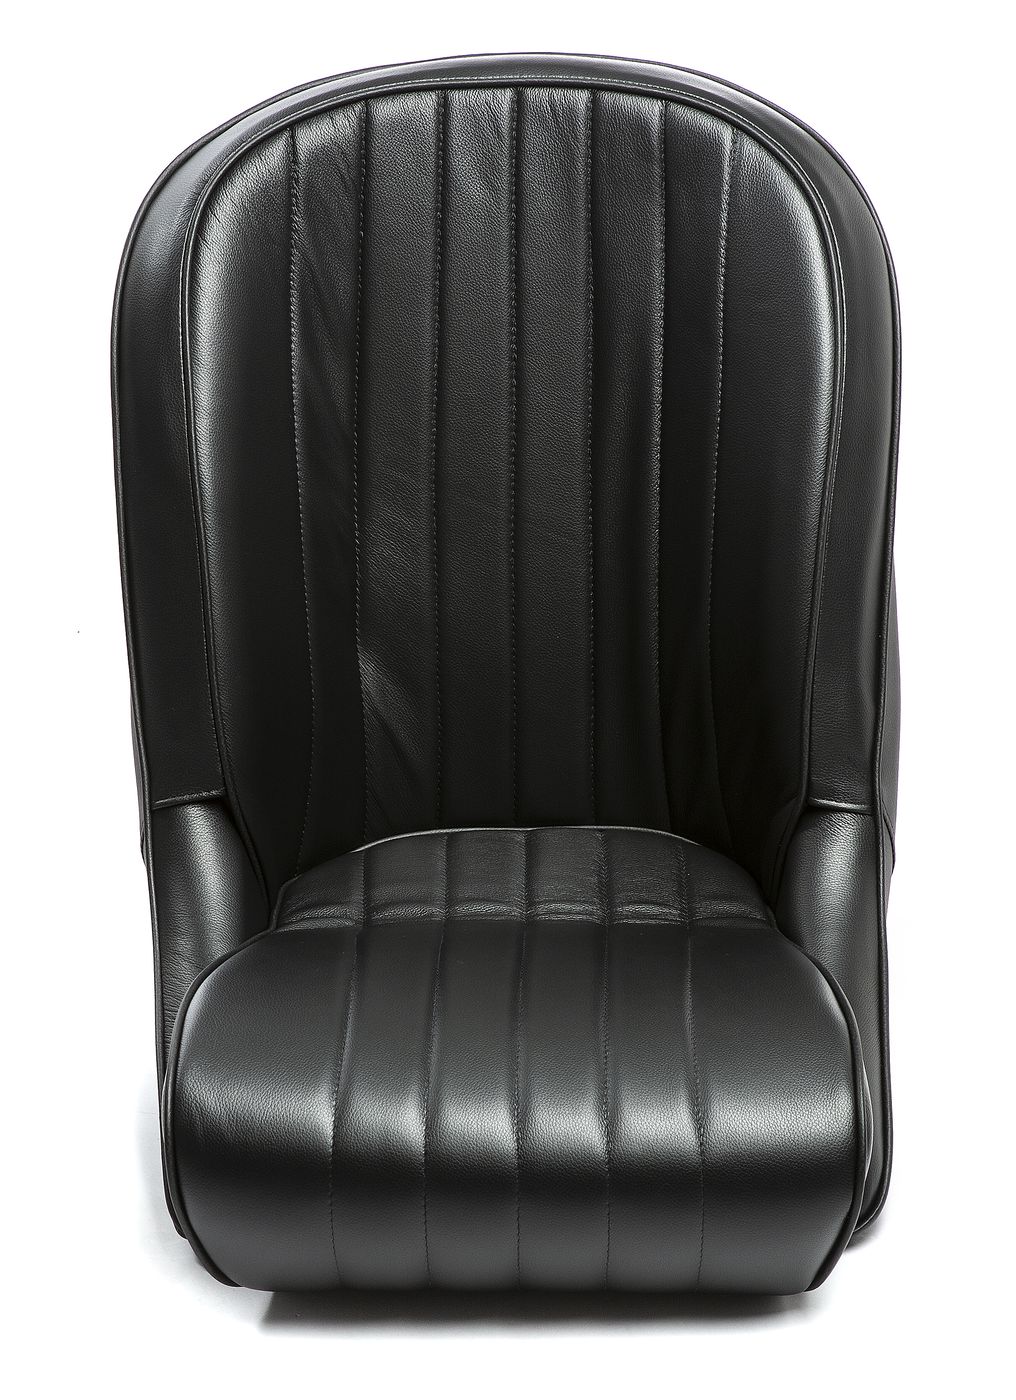 Ledersitz
Leather seat
Siège en cuir
Asiento de cuero
Banco em 